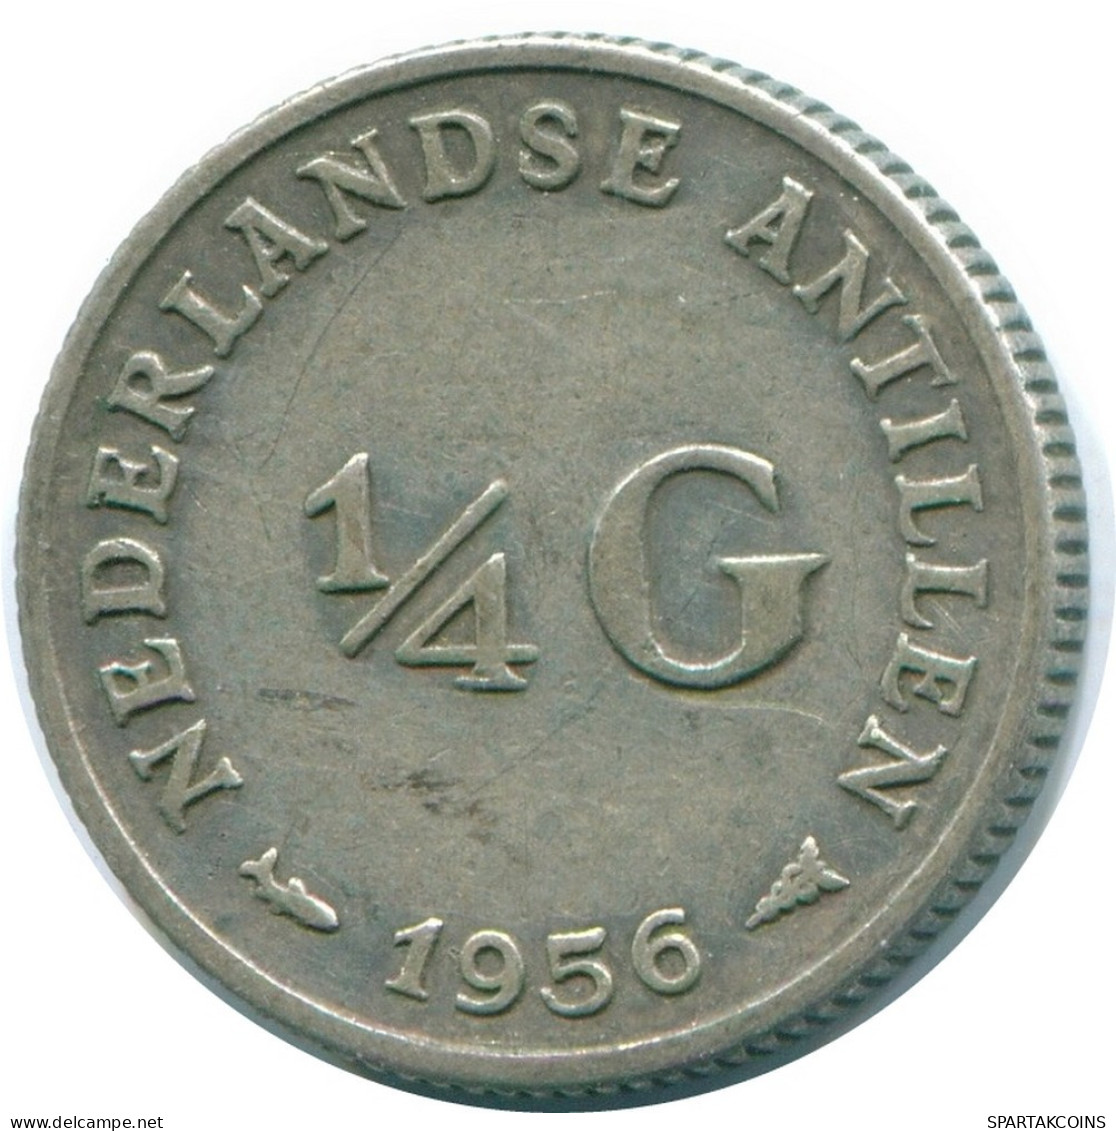 1/4 GULDEN 1956 NIEDERLÄNDISCHE ANTILLEN SILBER Koloniale Münze #NL10916.4.D.A - Antilles Néerlandaises